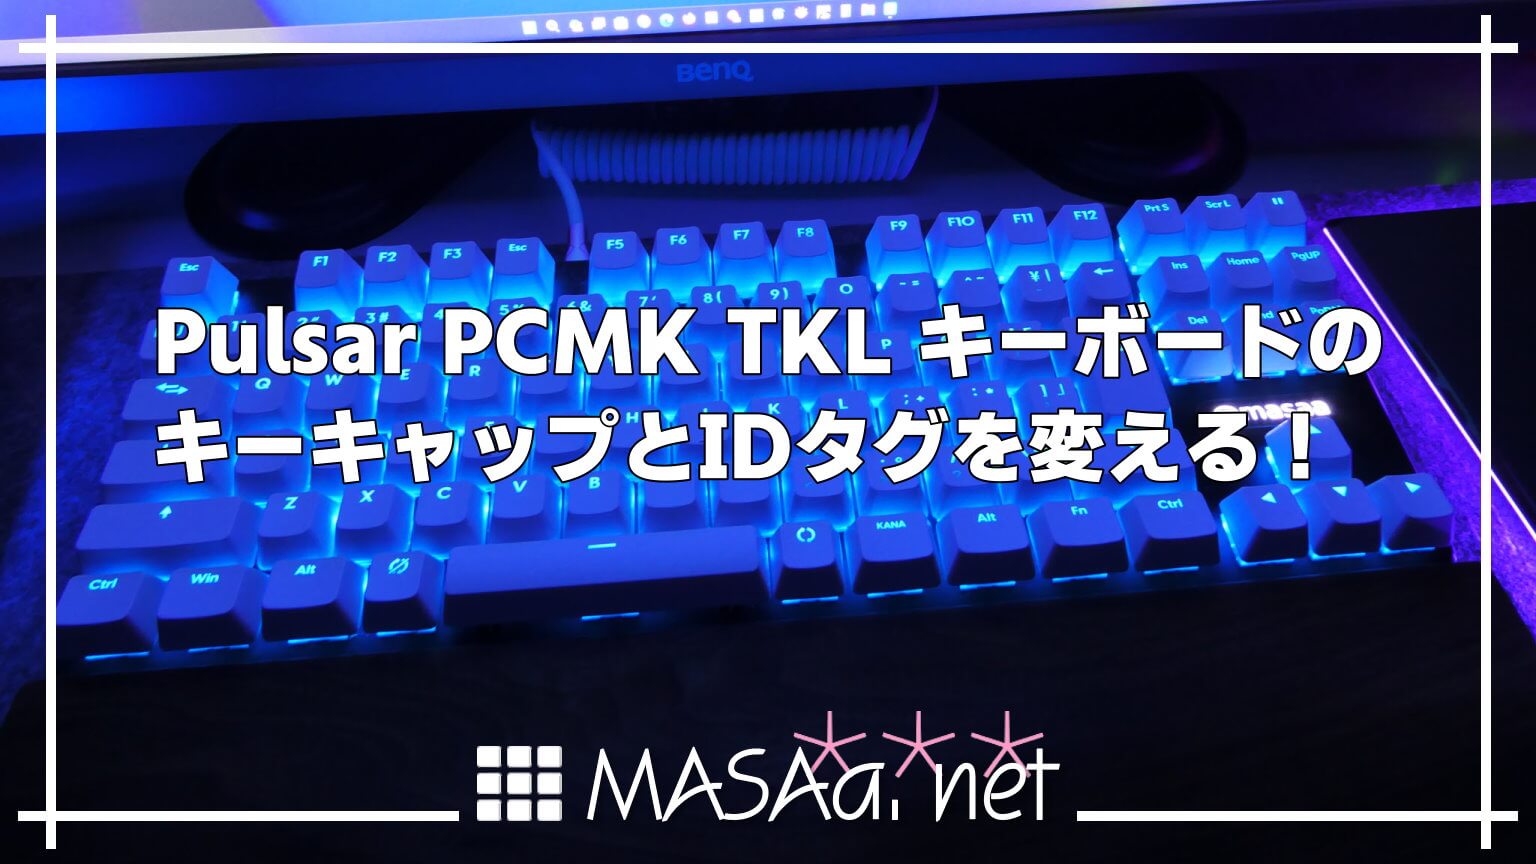 Pulsar PCMK TKL キーボードのキーキャップとIDタグを変える！